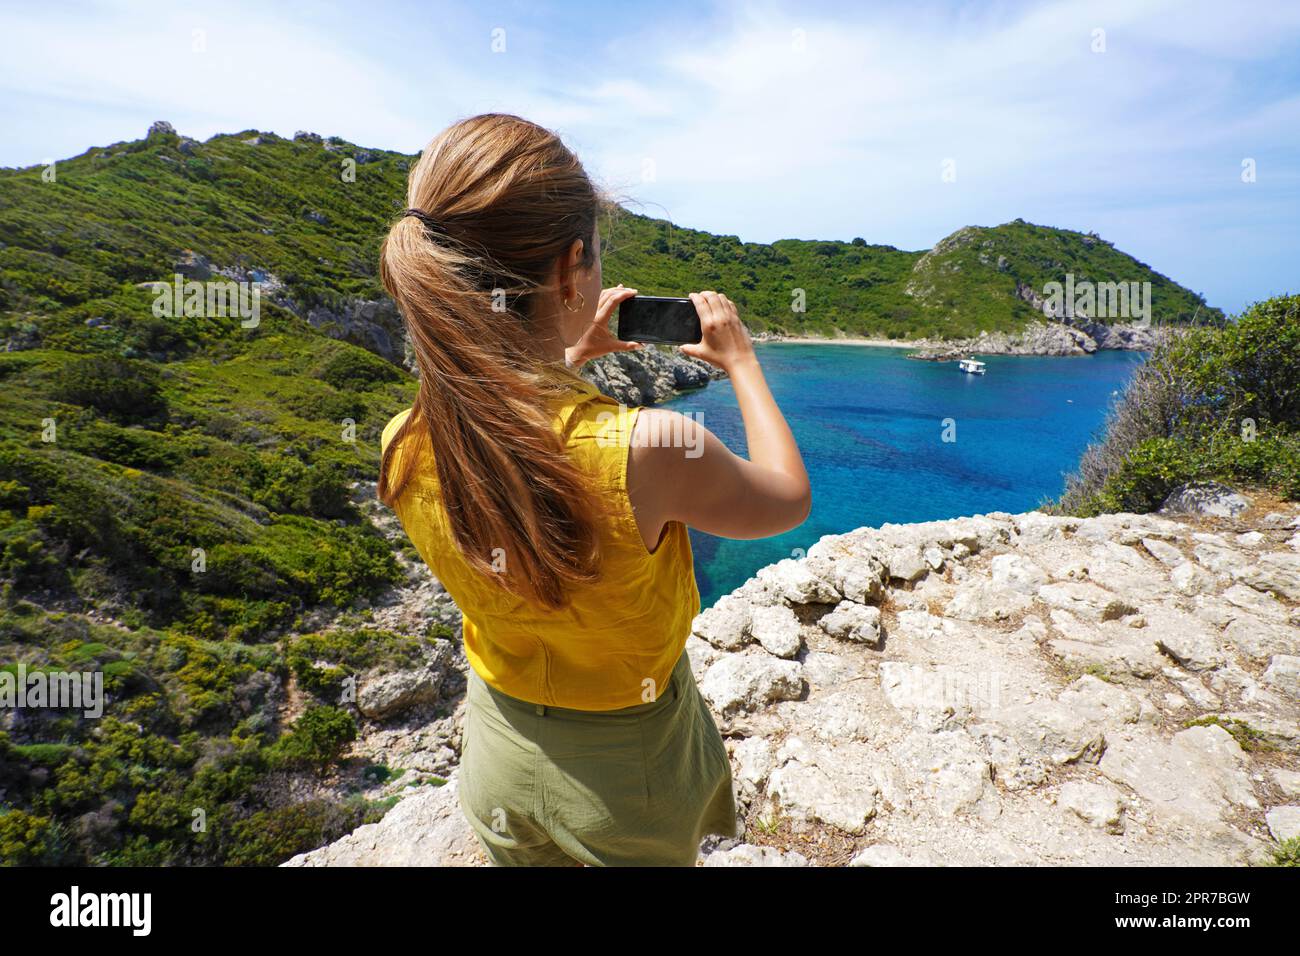 Jeune randonneur explorer fille prenant des photos avec un smartphone de la vue panoramique tropicale naturelle. Grand angle. Une journée venteuse. Banque D'Images